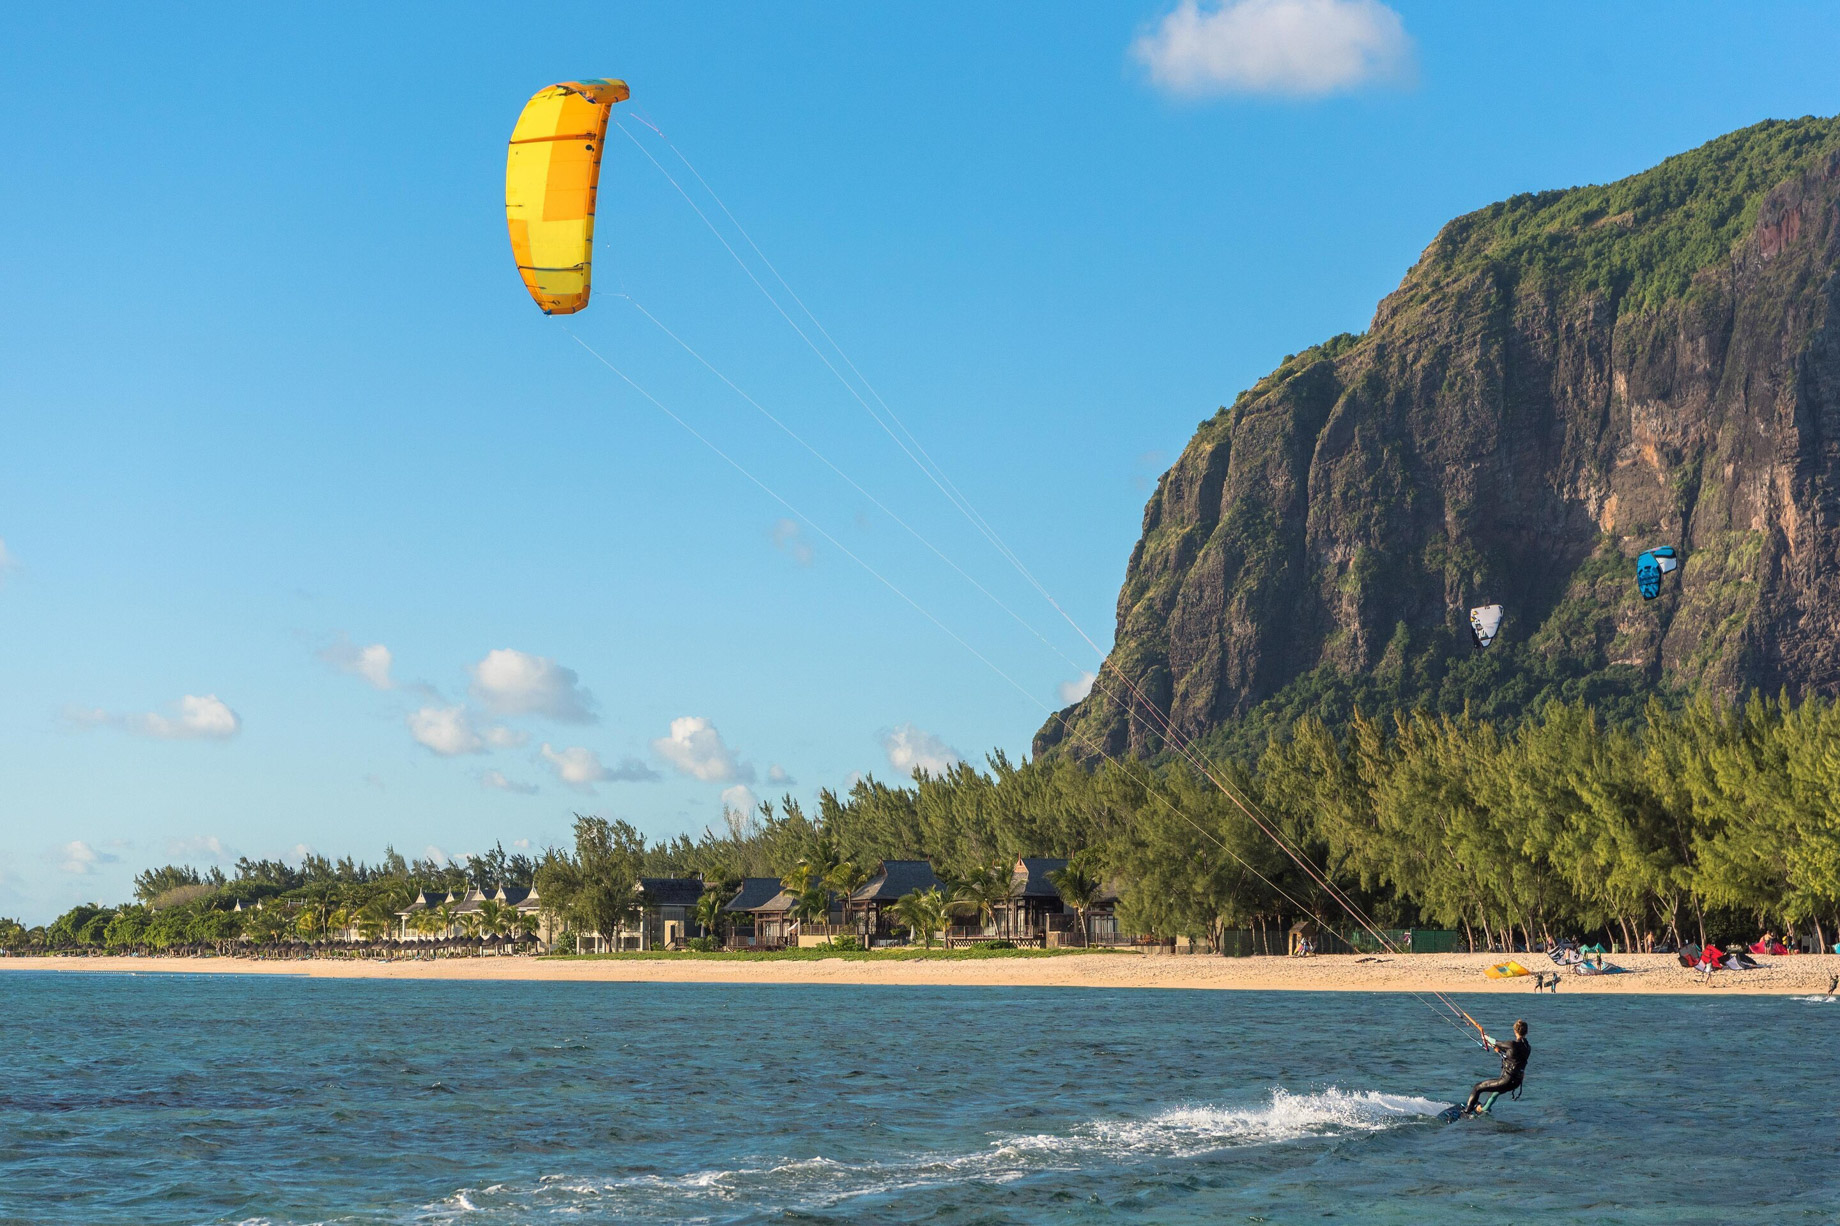 JW Marriott Mauritius Resort – Mauritius – Kite Surfing